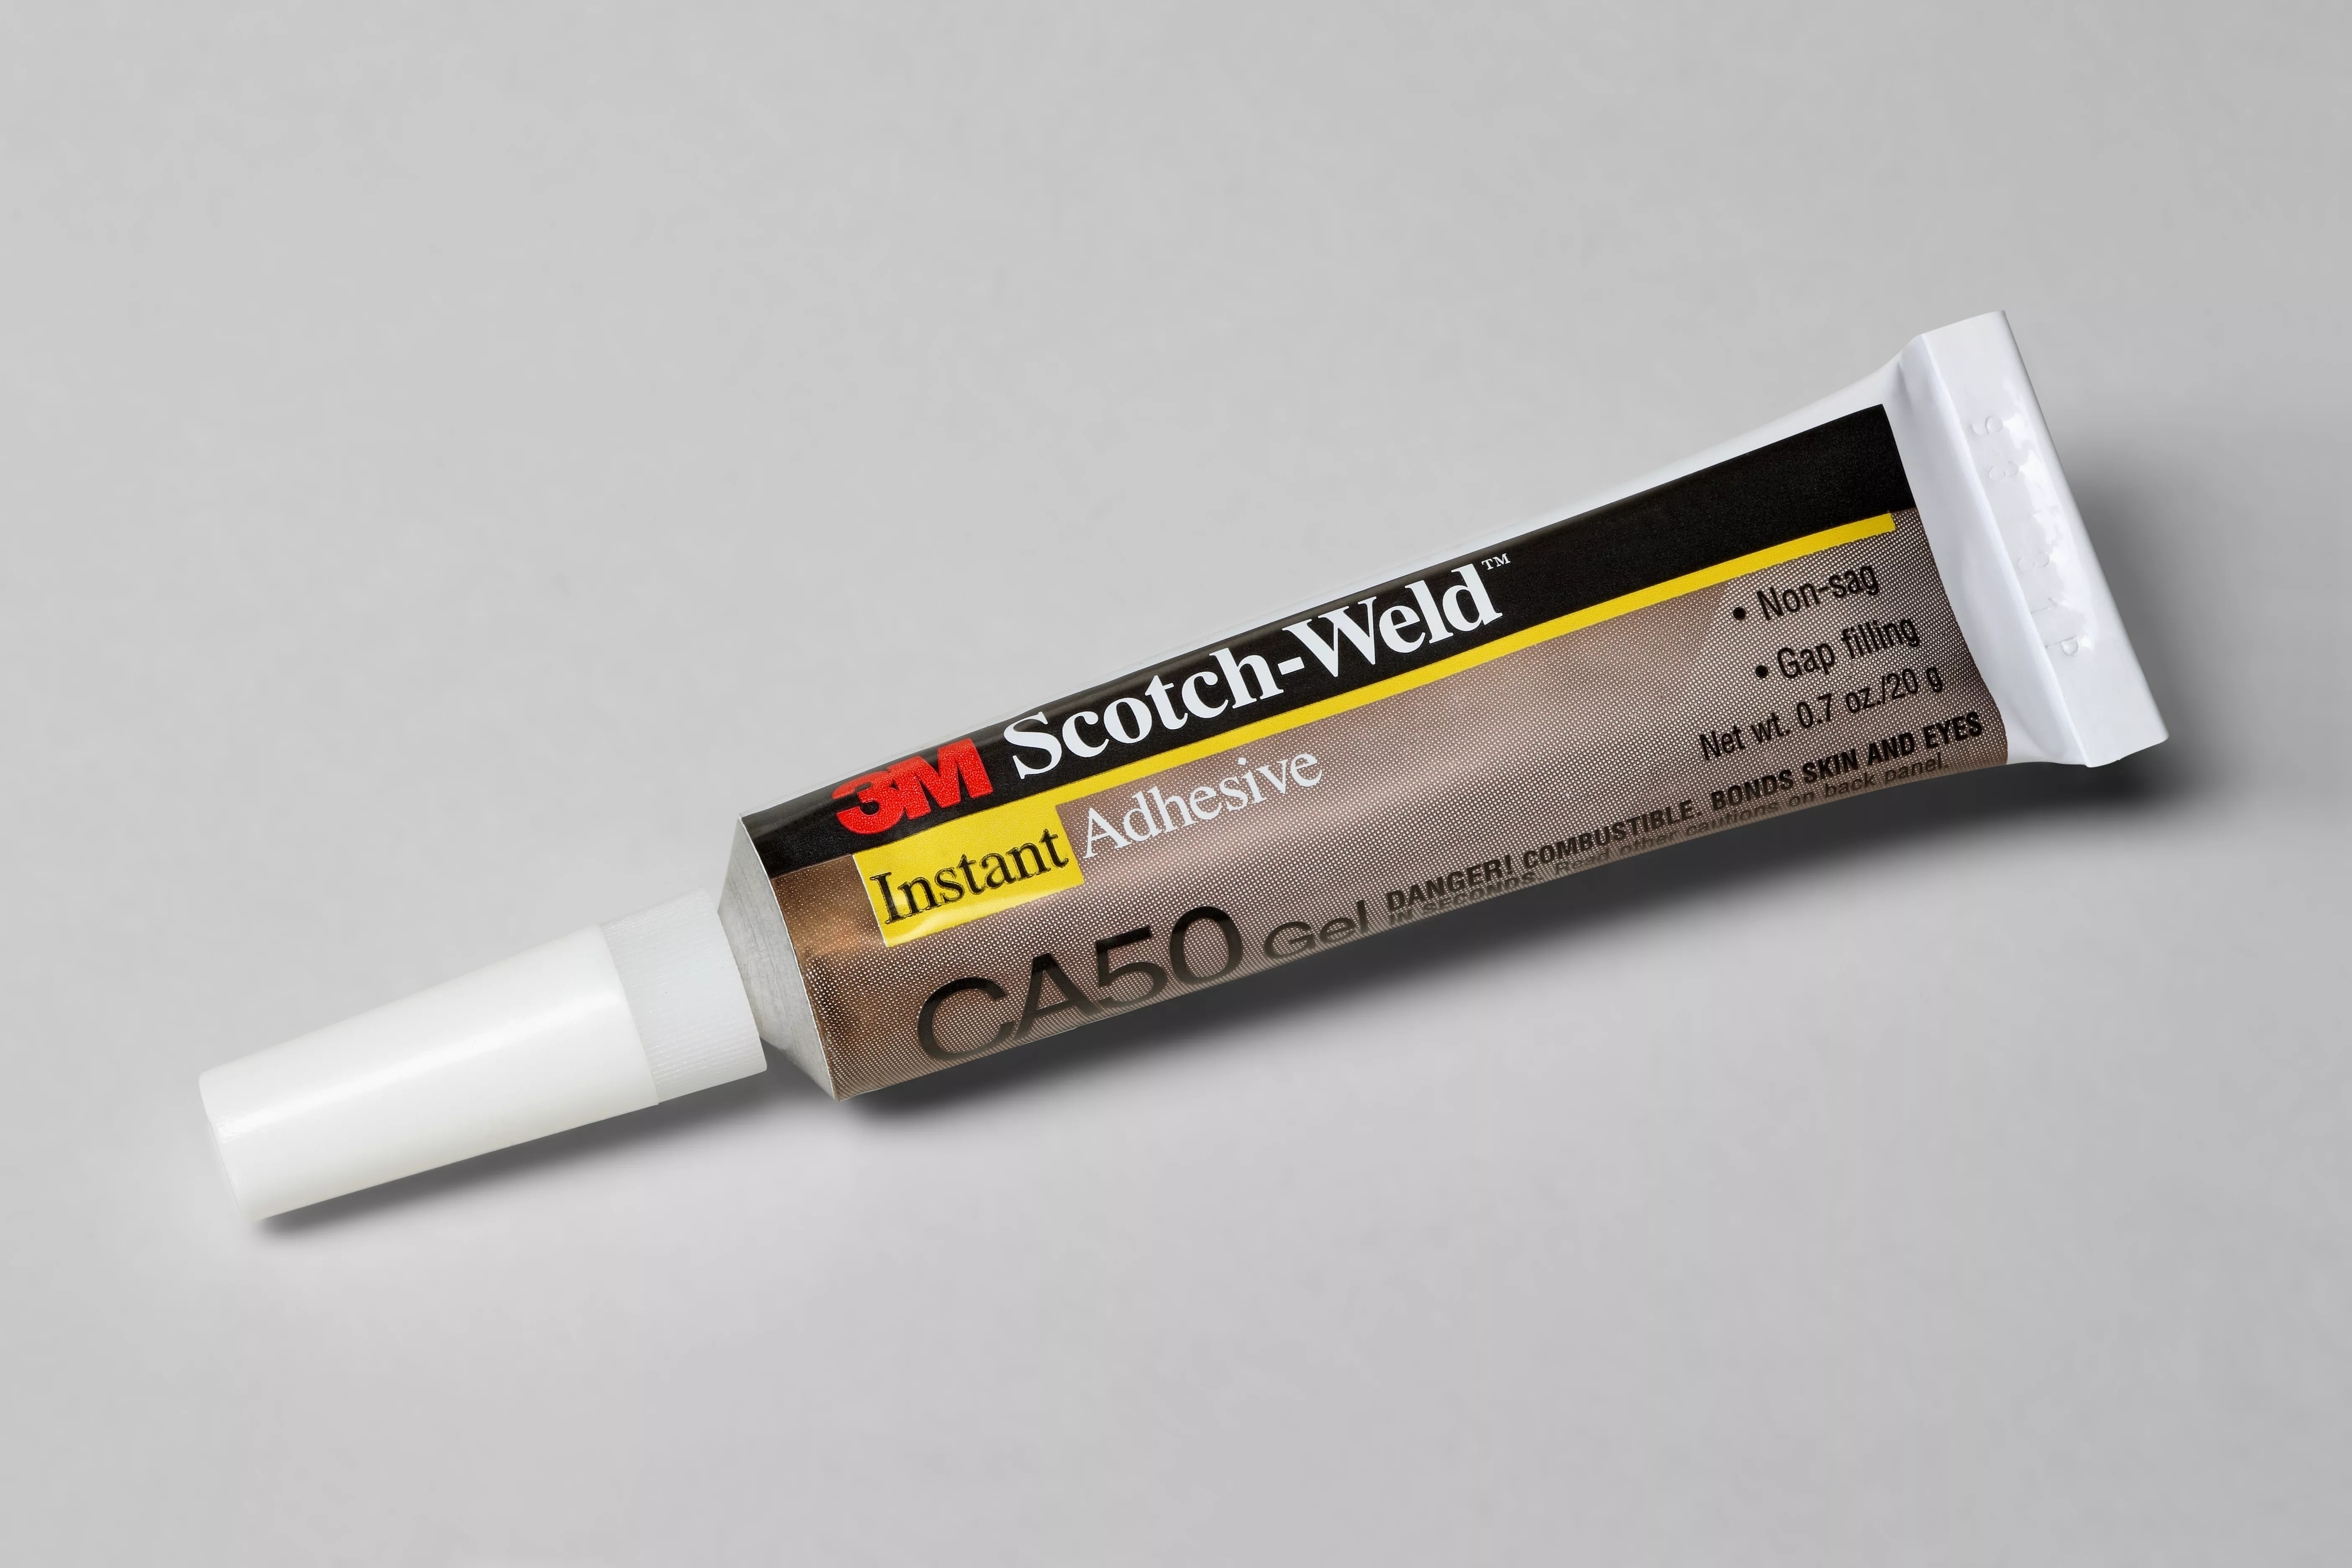 3M™ Scotch-Weld™ Instant Adhesive CA50, Gel, Clear, 20 Gram, 12
Each/Case